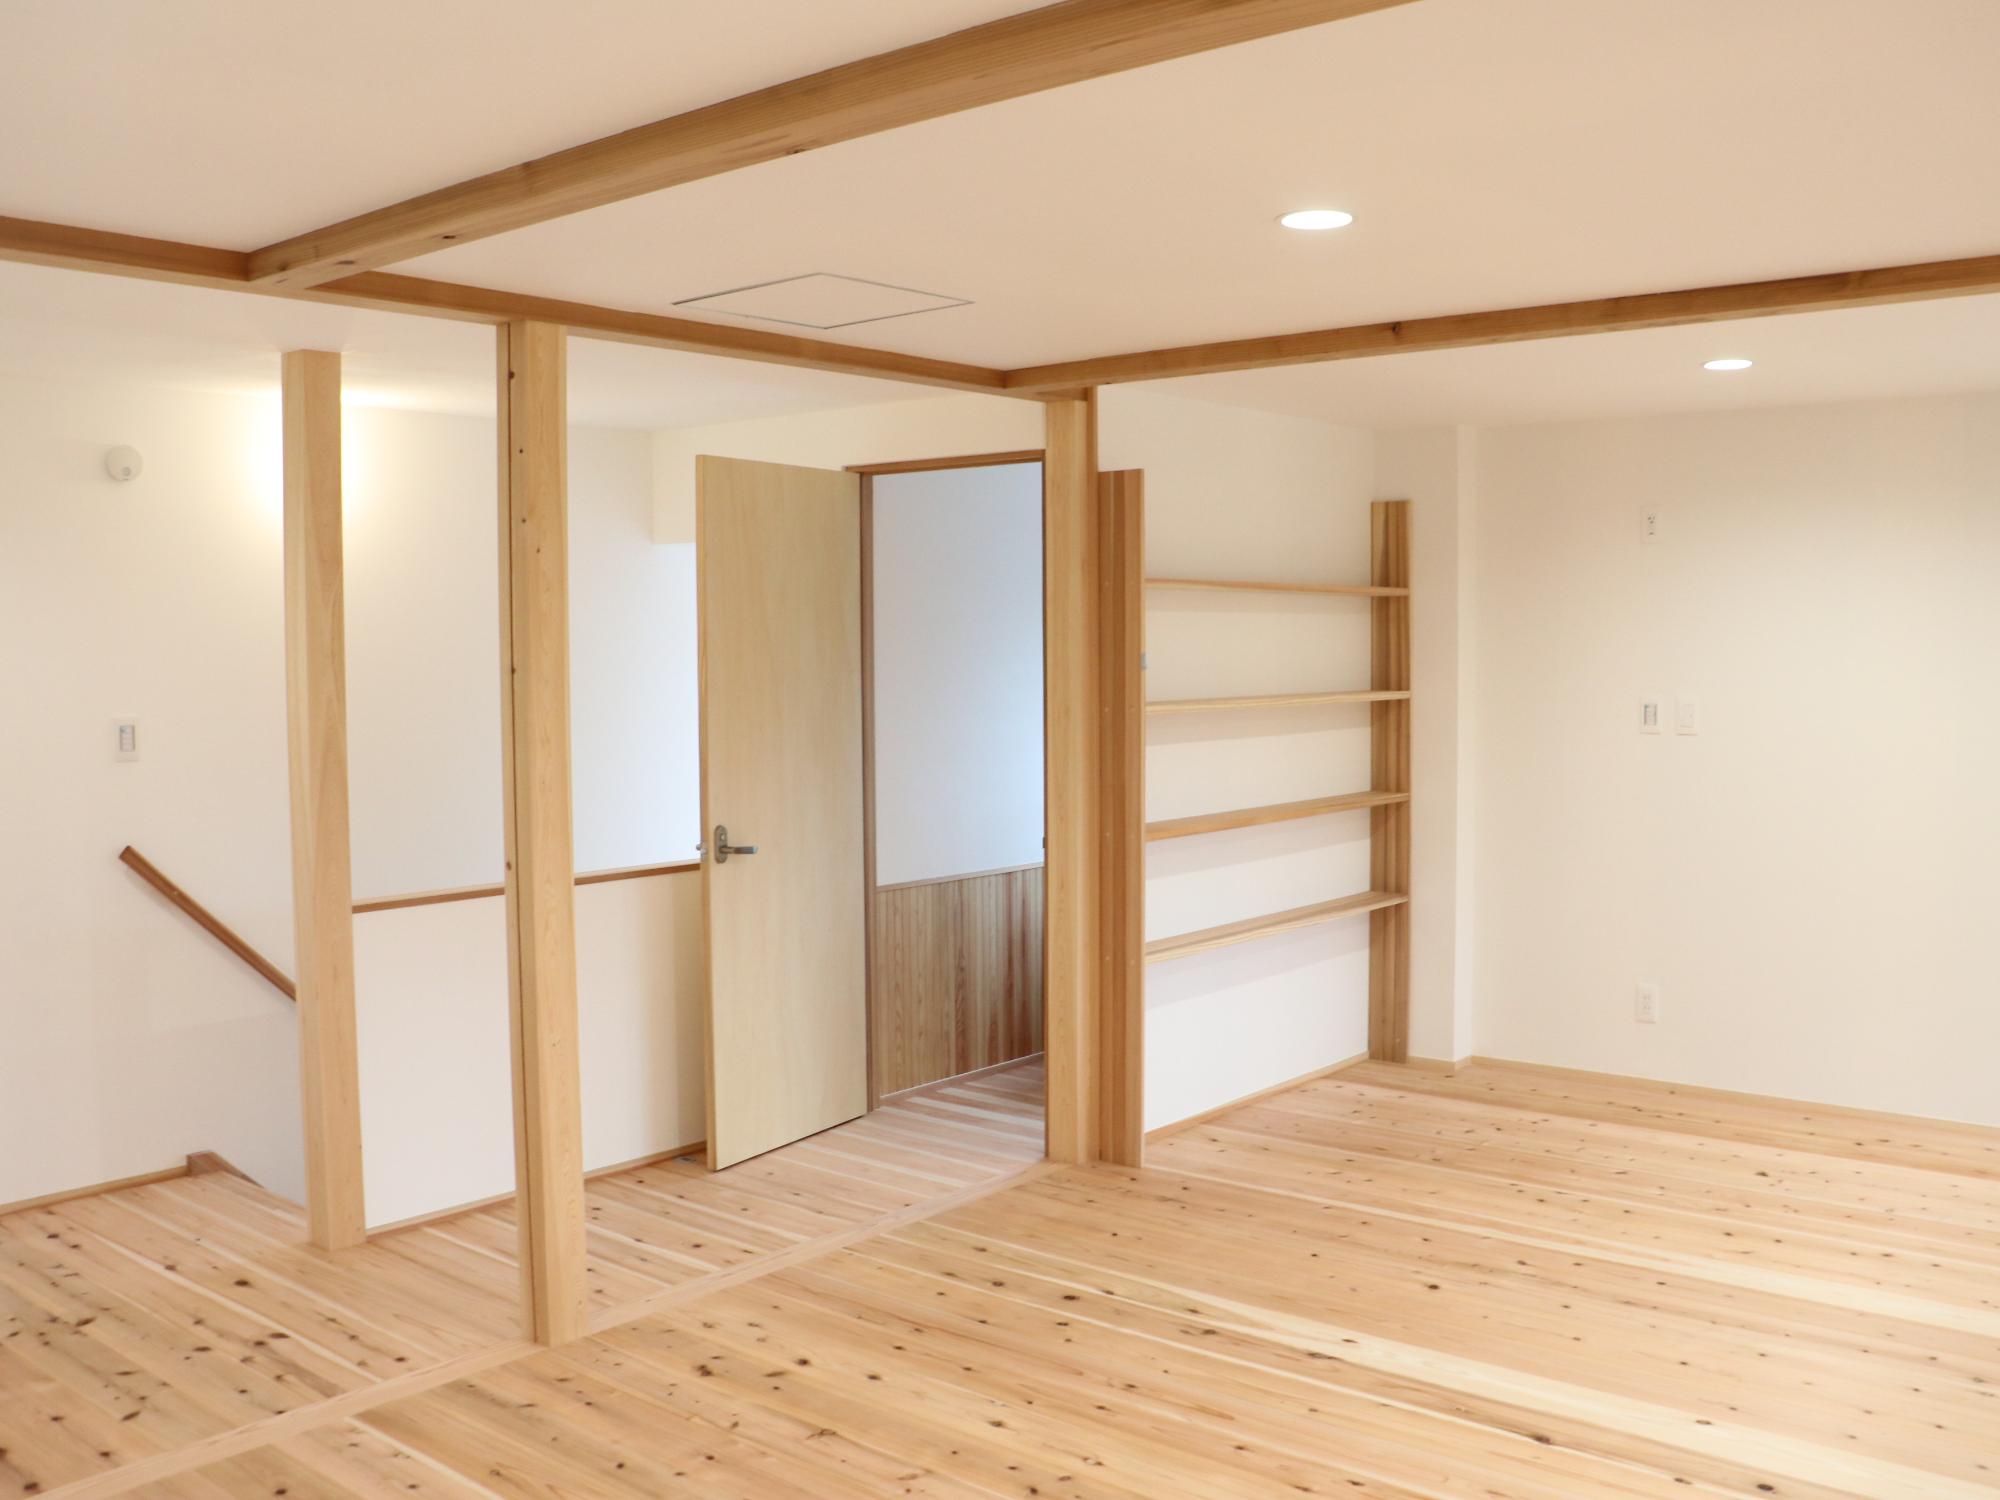 丹波篠山の家モデルハウスの内装。